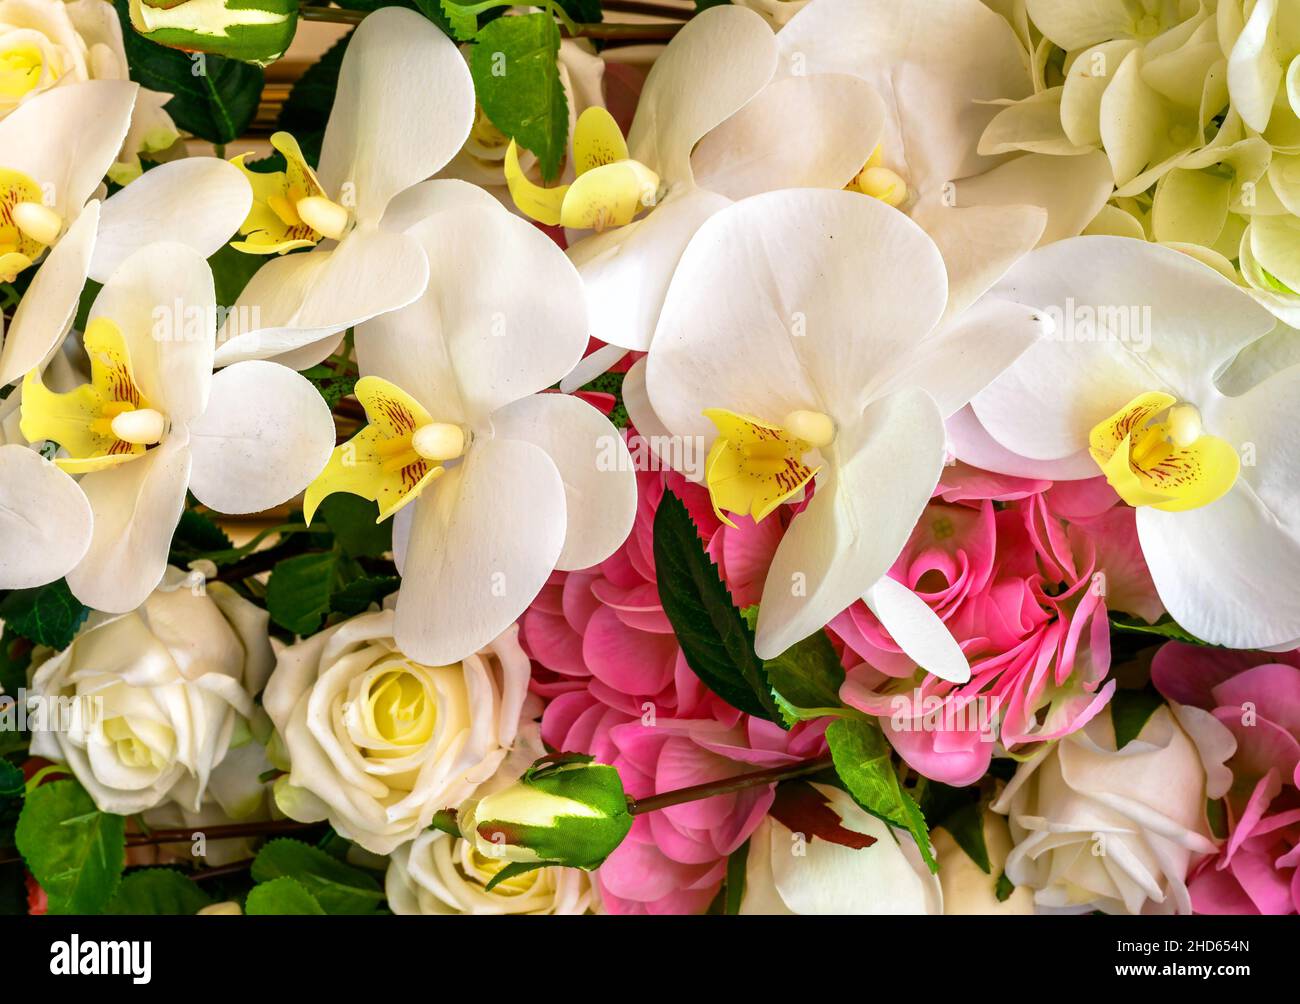 Fleurs d'orchidées, roses et autres fleurs, vue de dessus du bouquet frais avec orchidées blanches.Joli motif avec de belles fleurs.Nature, amour, mariage, gif Banque D'Images